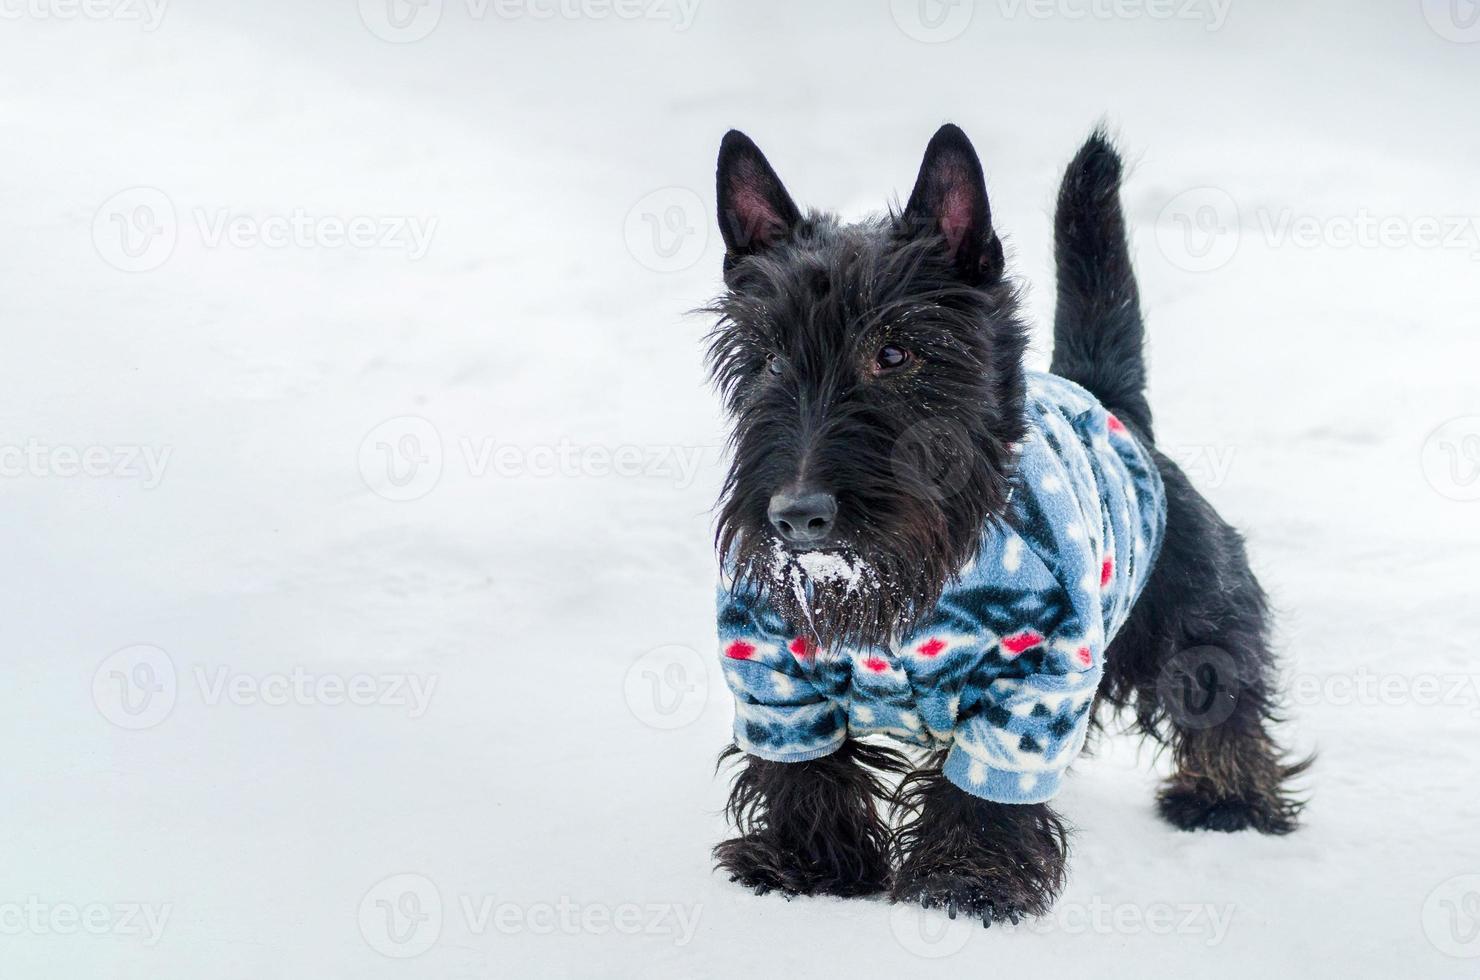 yorkshire terrier perrito, espacio de copia nevado. perrito pequeño y lindo en traje. cuidado del dueño de la mascota foto